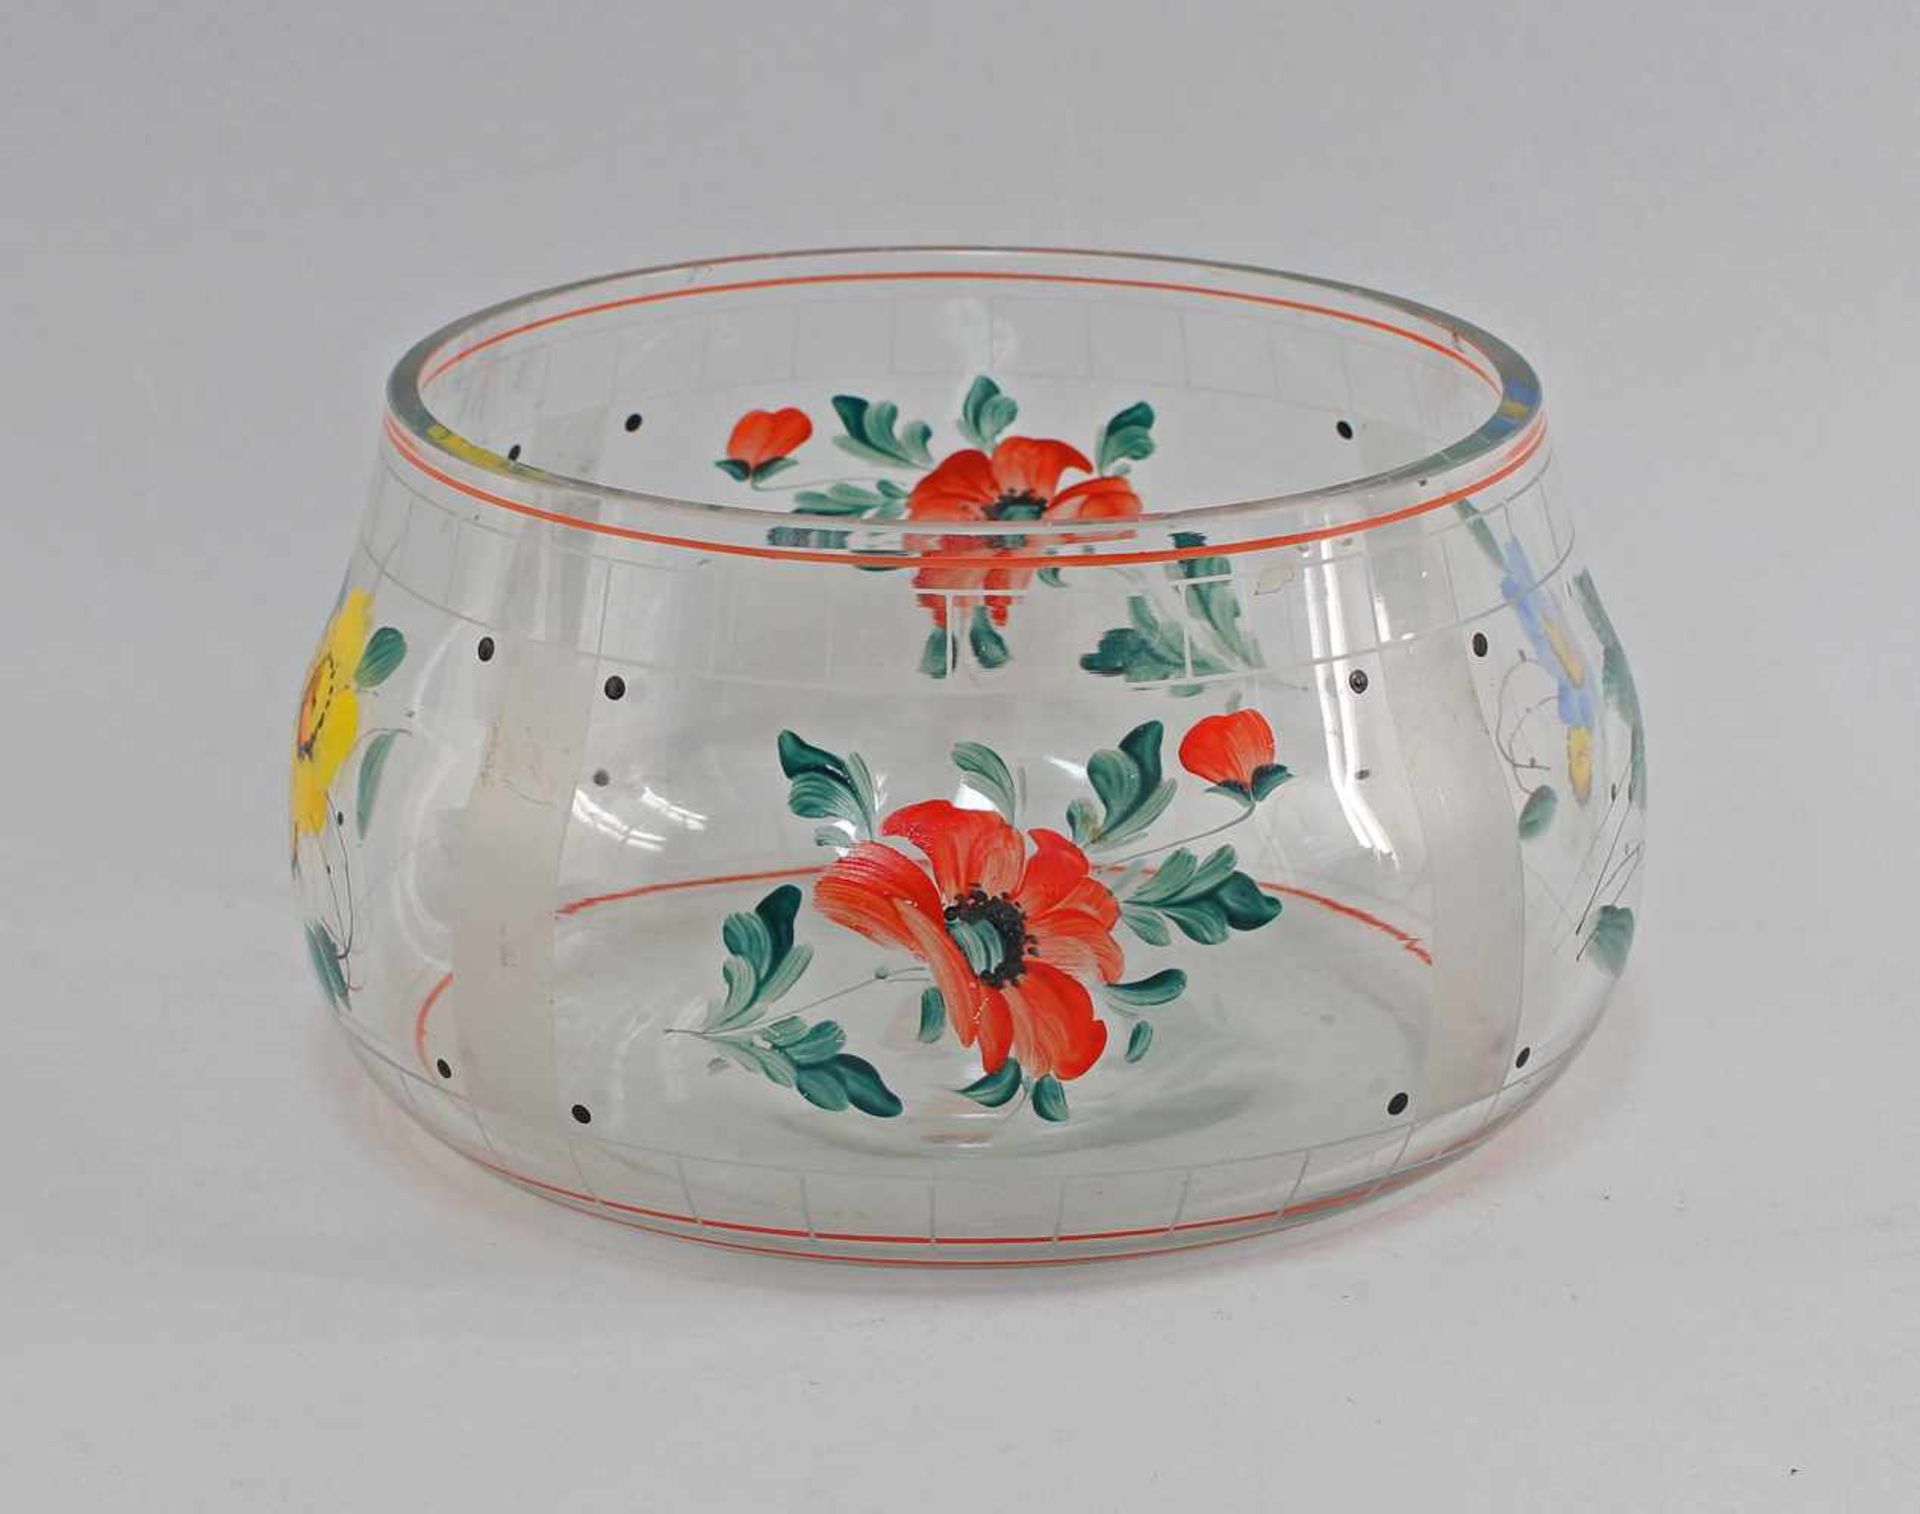 Bamalte Schale 40/60er Jahre, farbloses Glas formgeblasen, farbig bemalt mit Blumendekor, am - Bild 2 aus 3